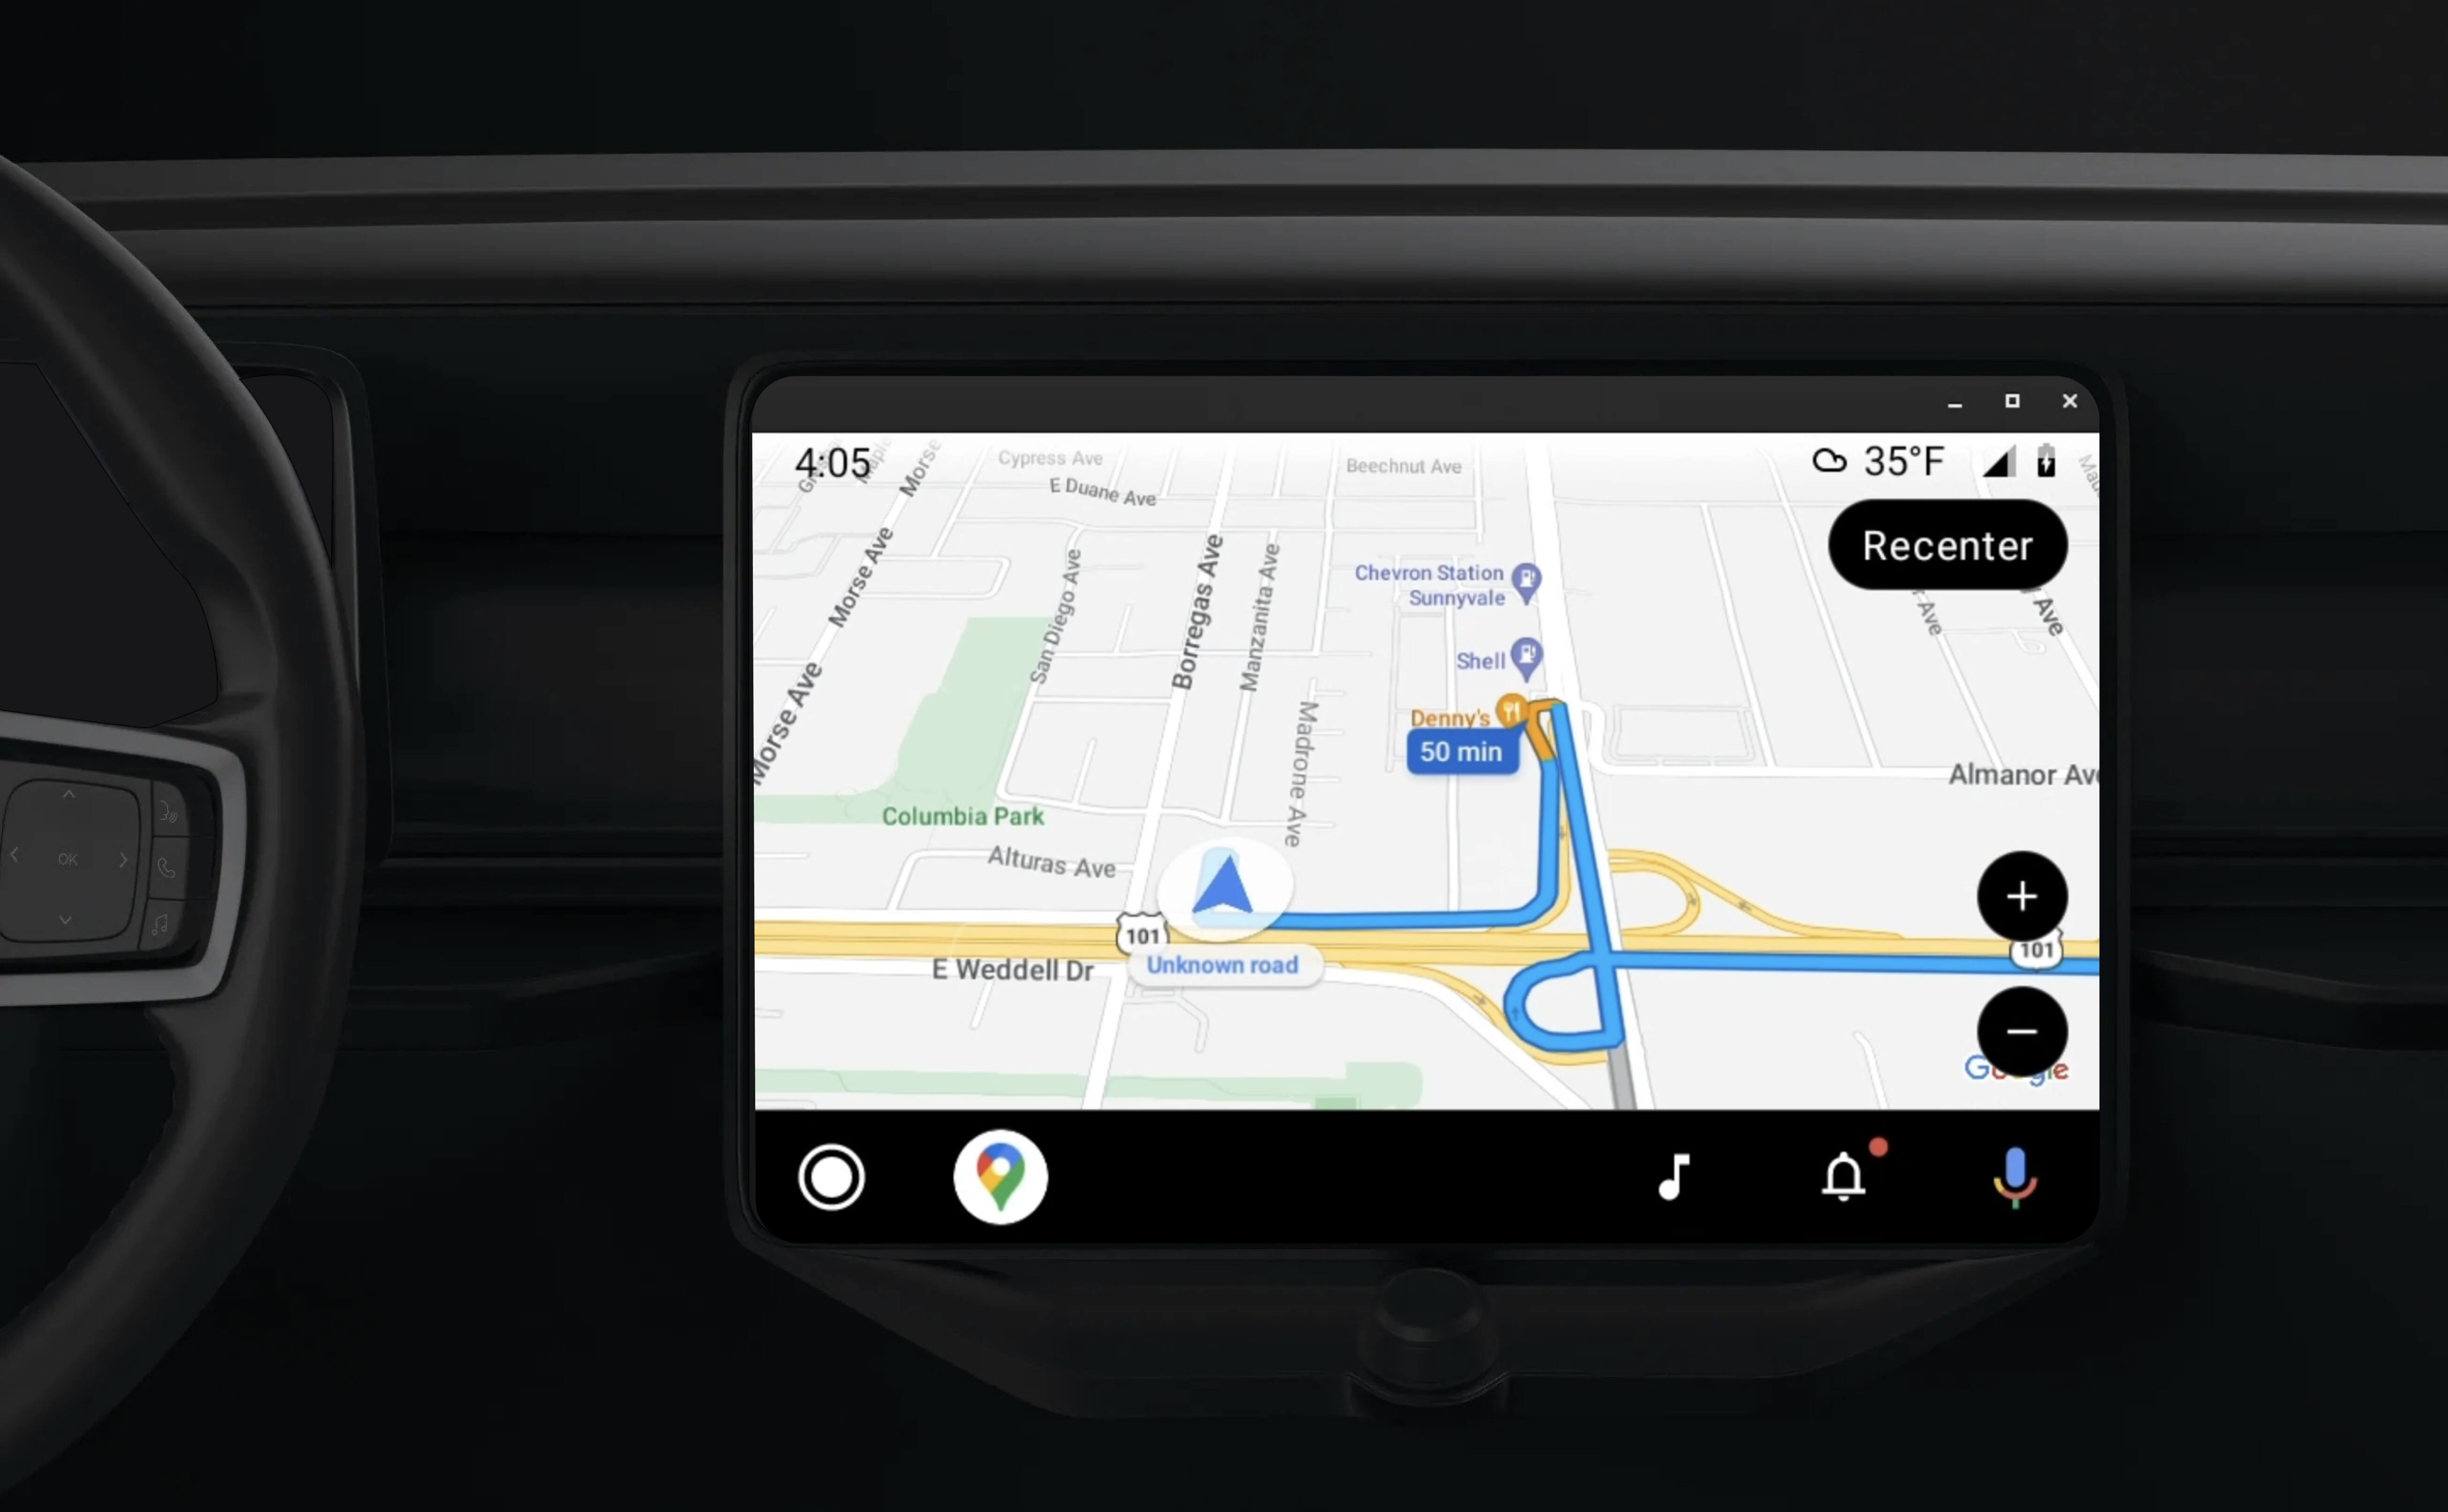 儀表板車用運算主機使用已啟用應用程式的導覽功能
Android Auto